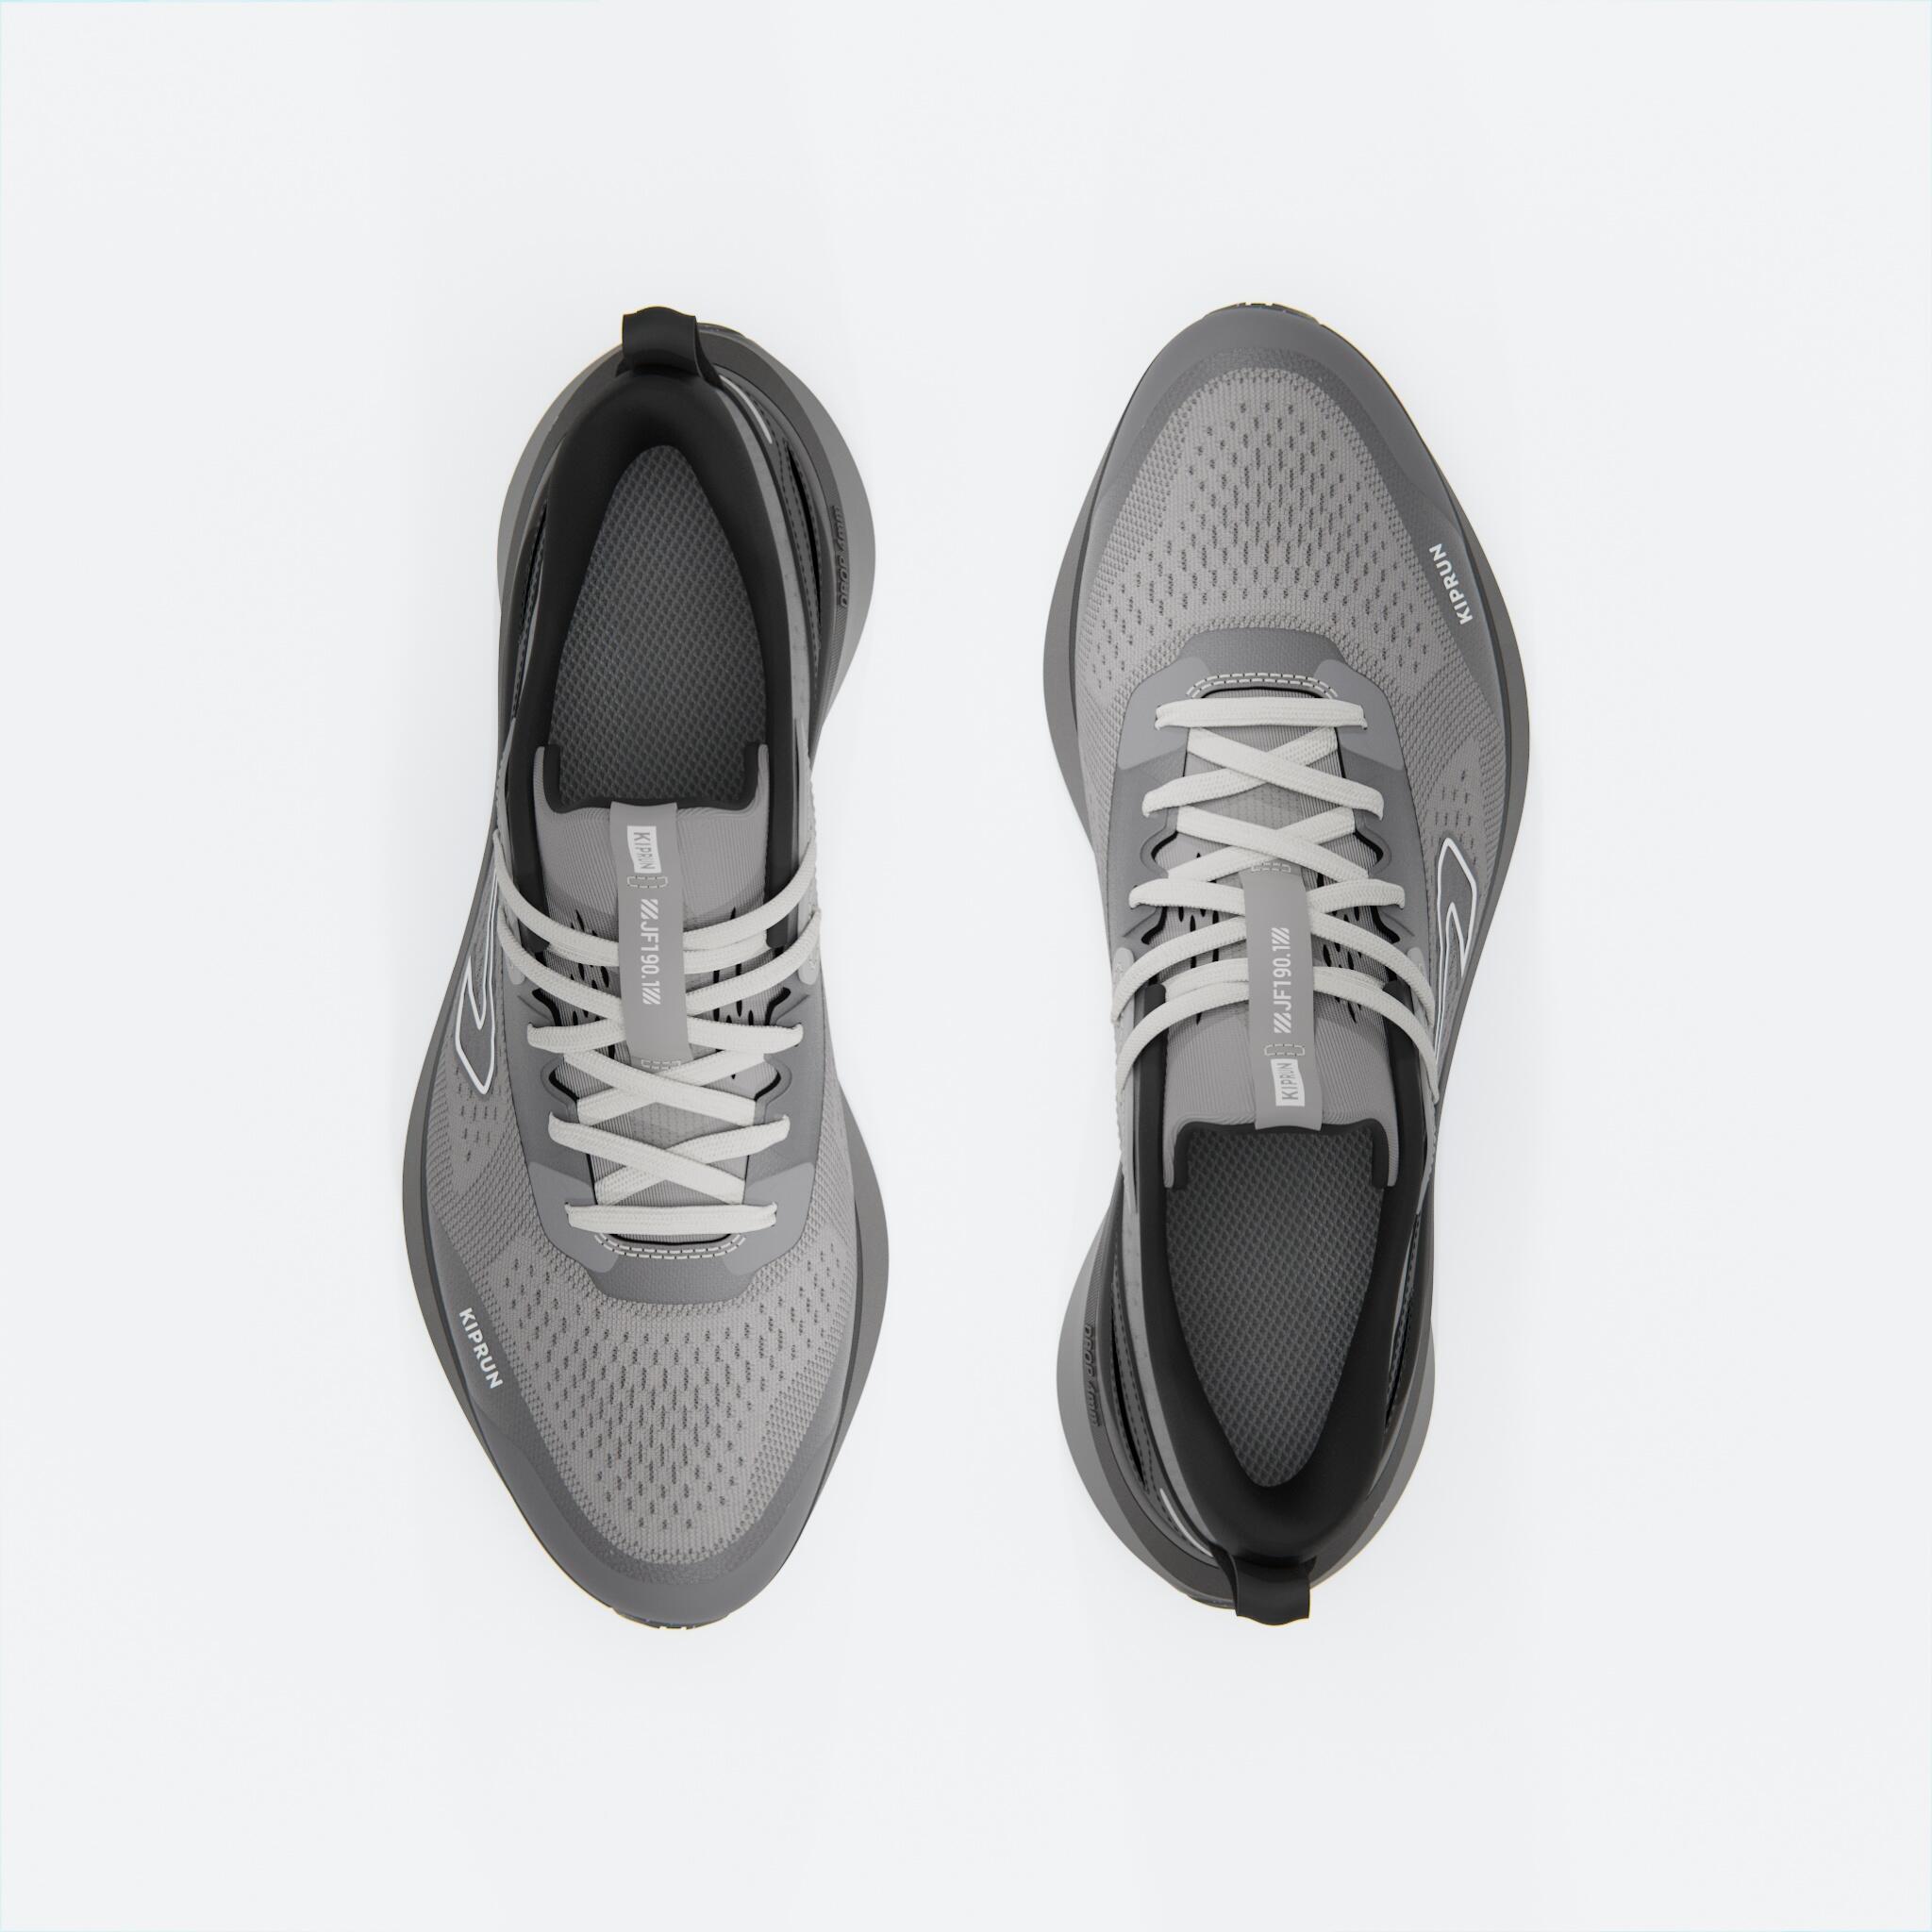 JOGFLOW 190.1 Men's Running Shoes - Black/Grey 7/7